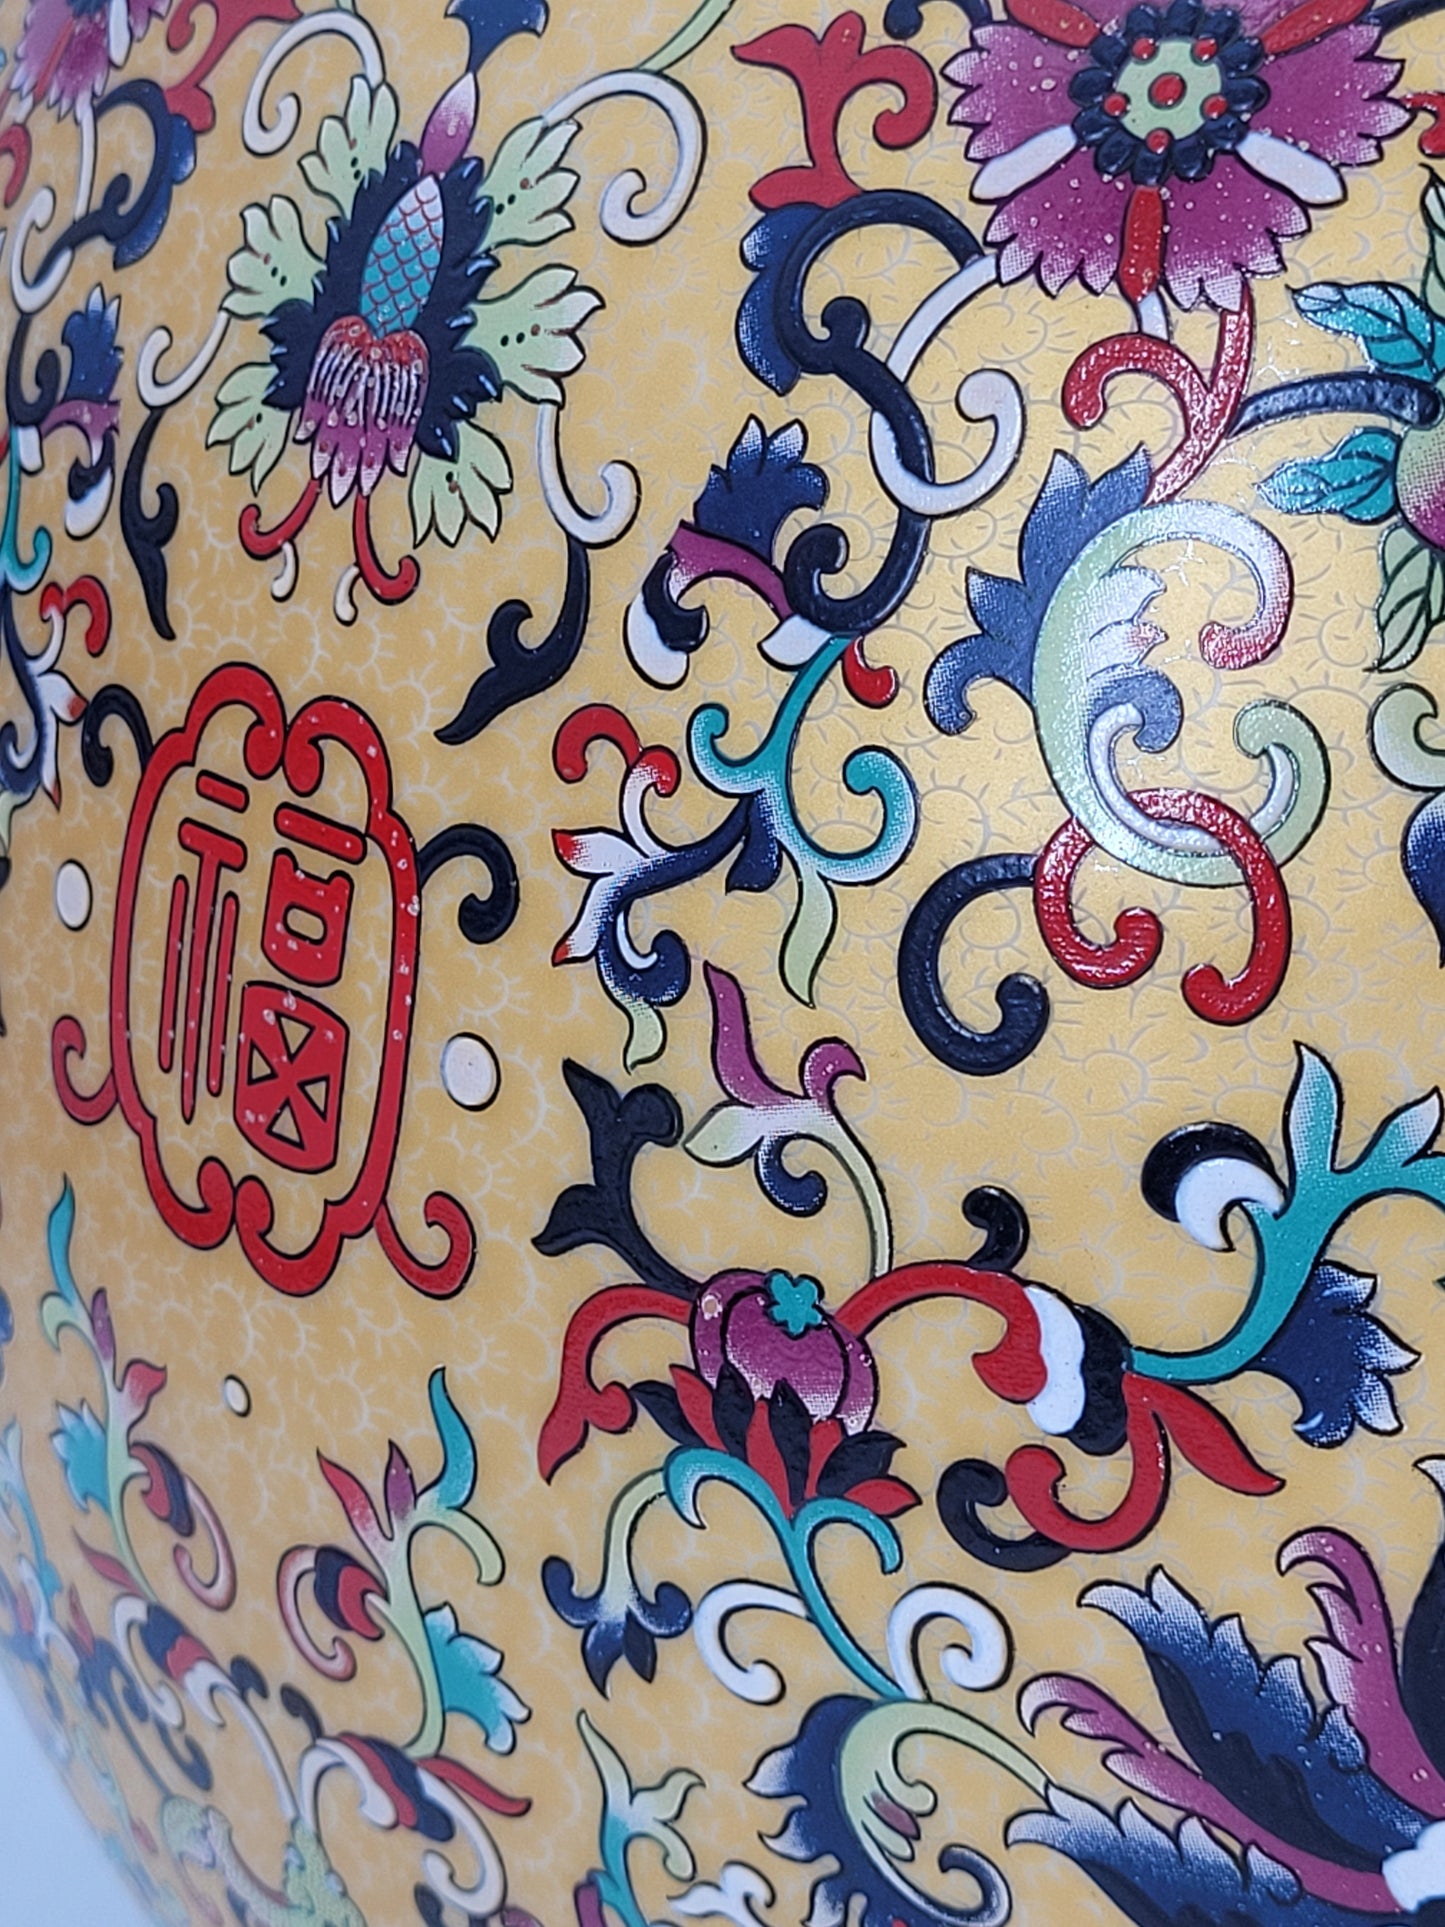 Asiatische Cloisonne Vase Unterseite gestempelt Handarbeit Höhe 54cm